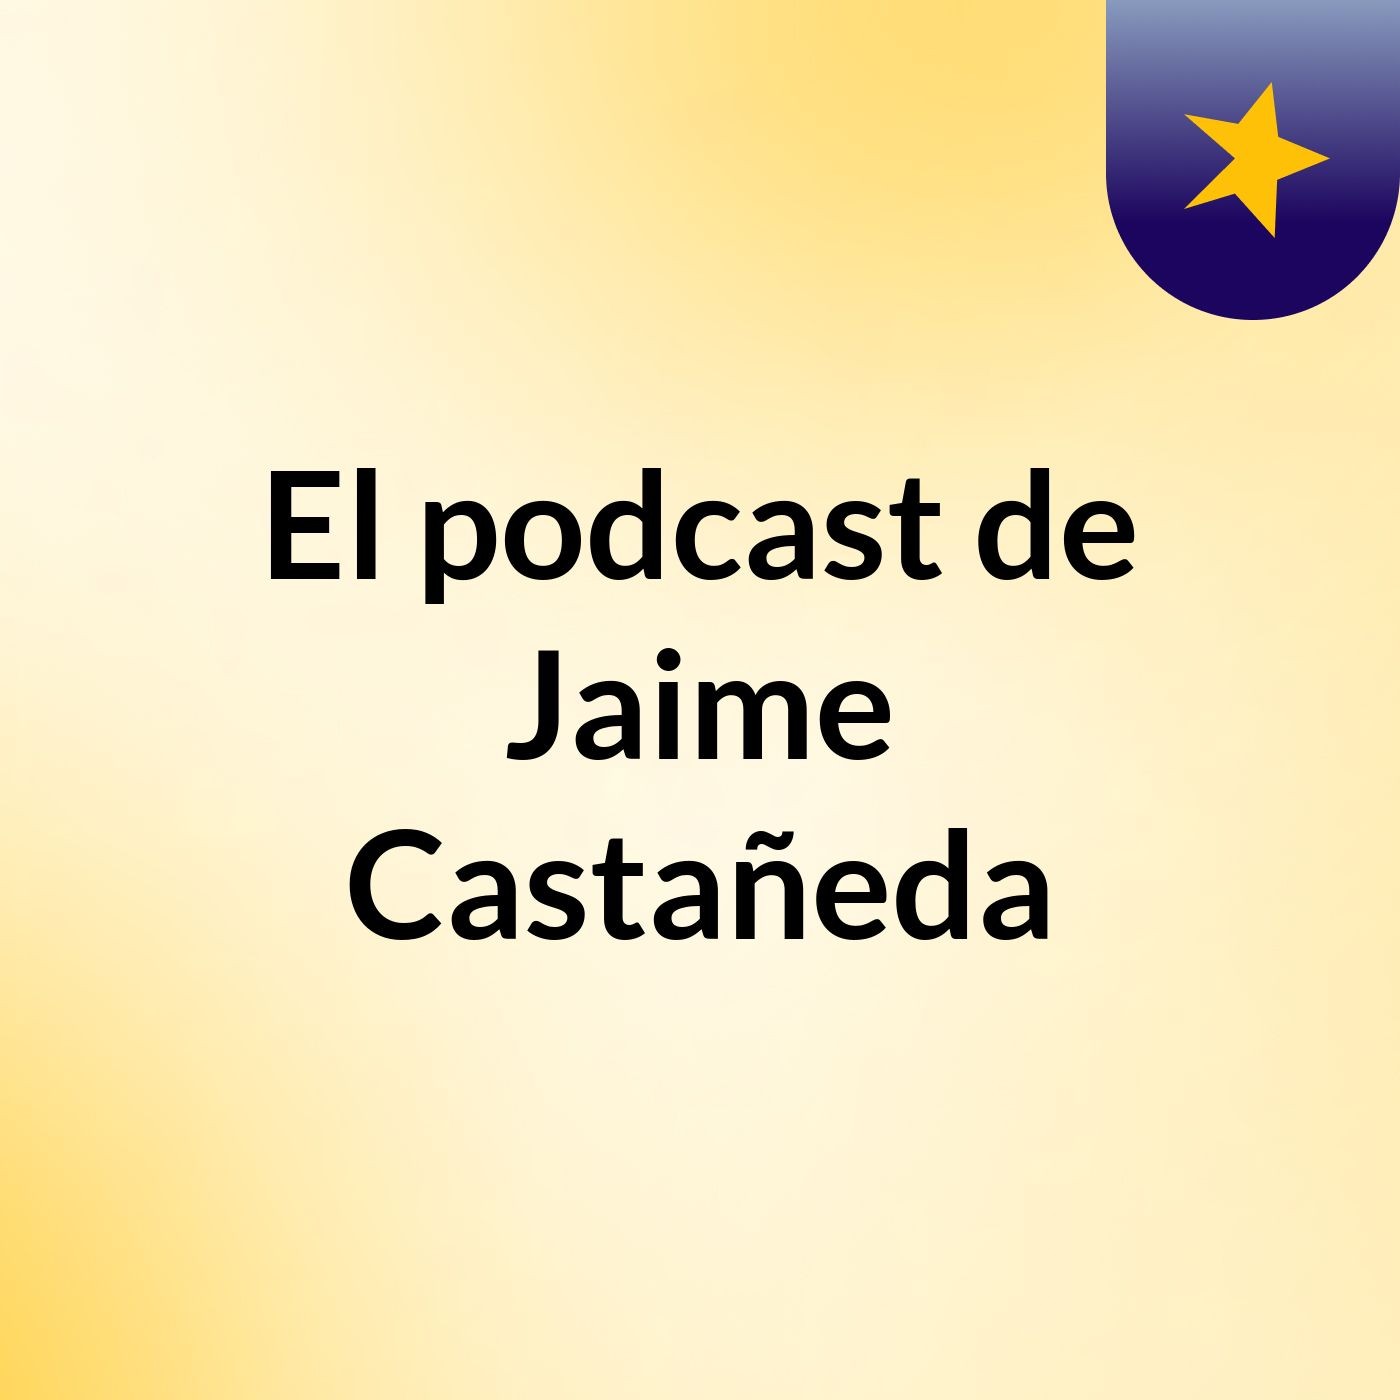 El podcast de Jaime Castañeda